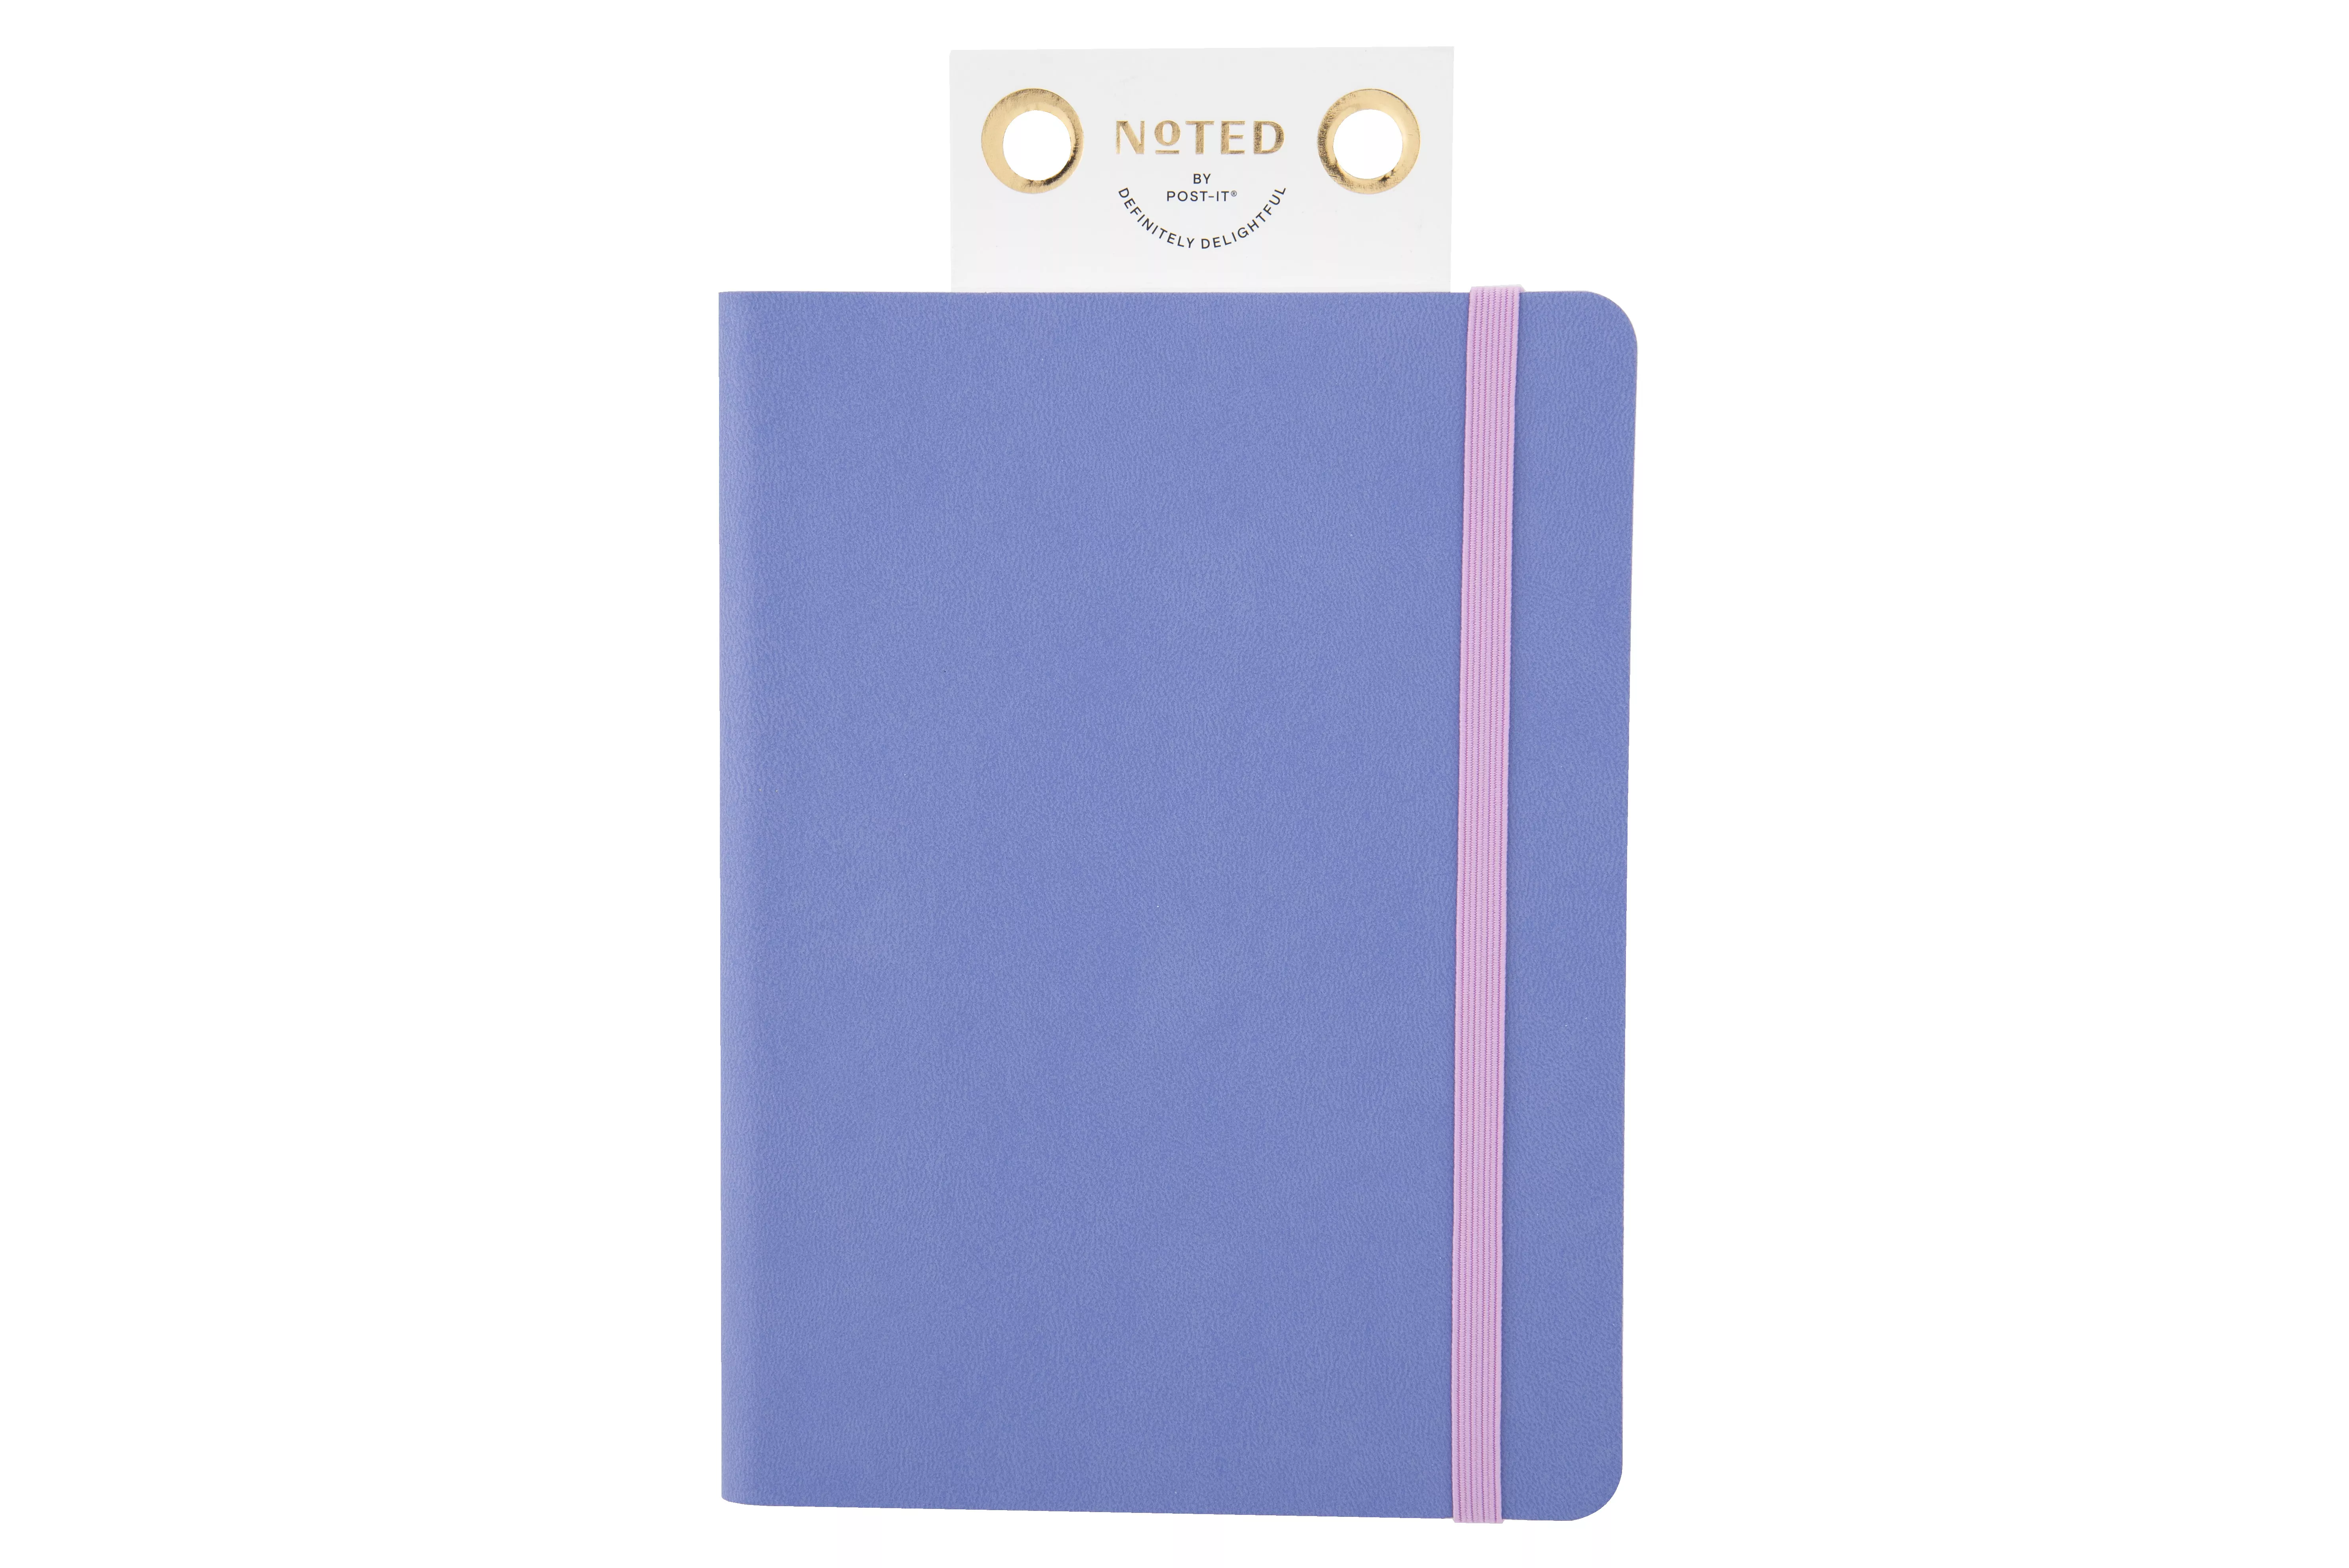 Post-it® Notebook NTD8-NB-1, 5.25 in x 7.25 in (133 mm x 184 mm)